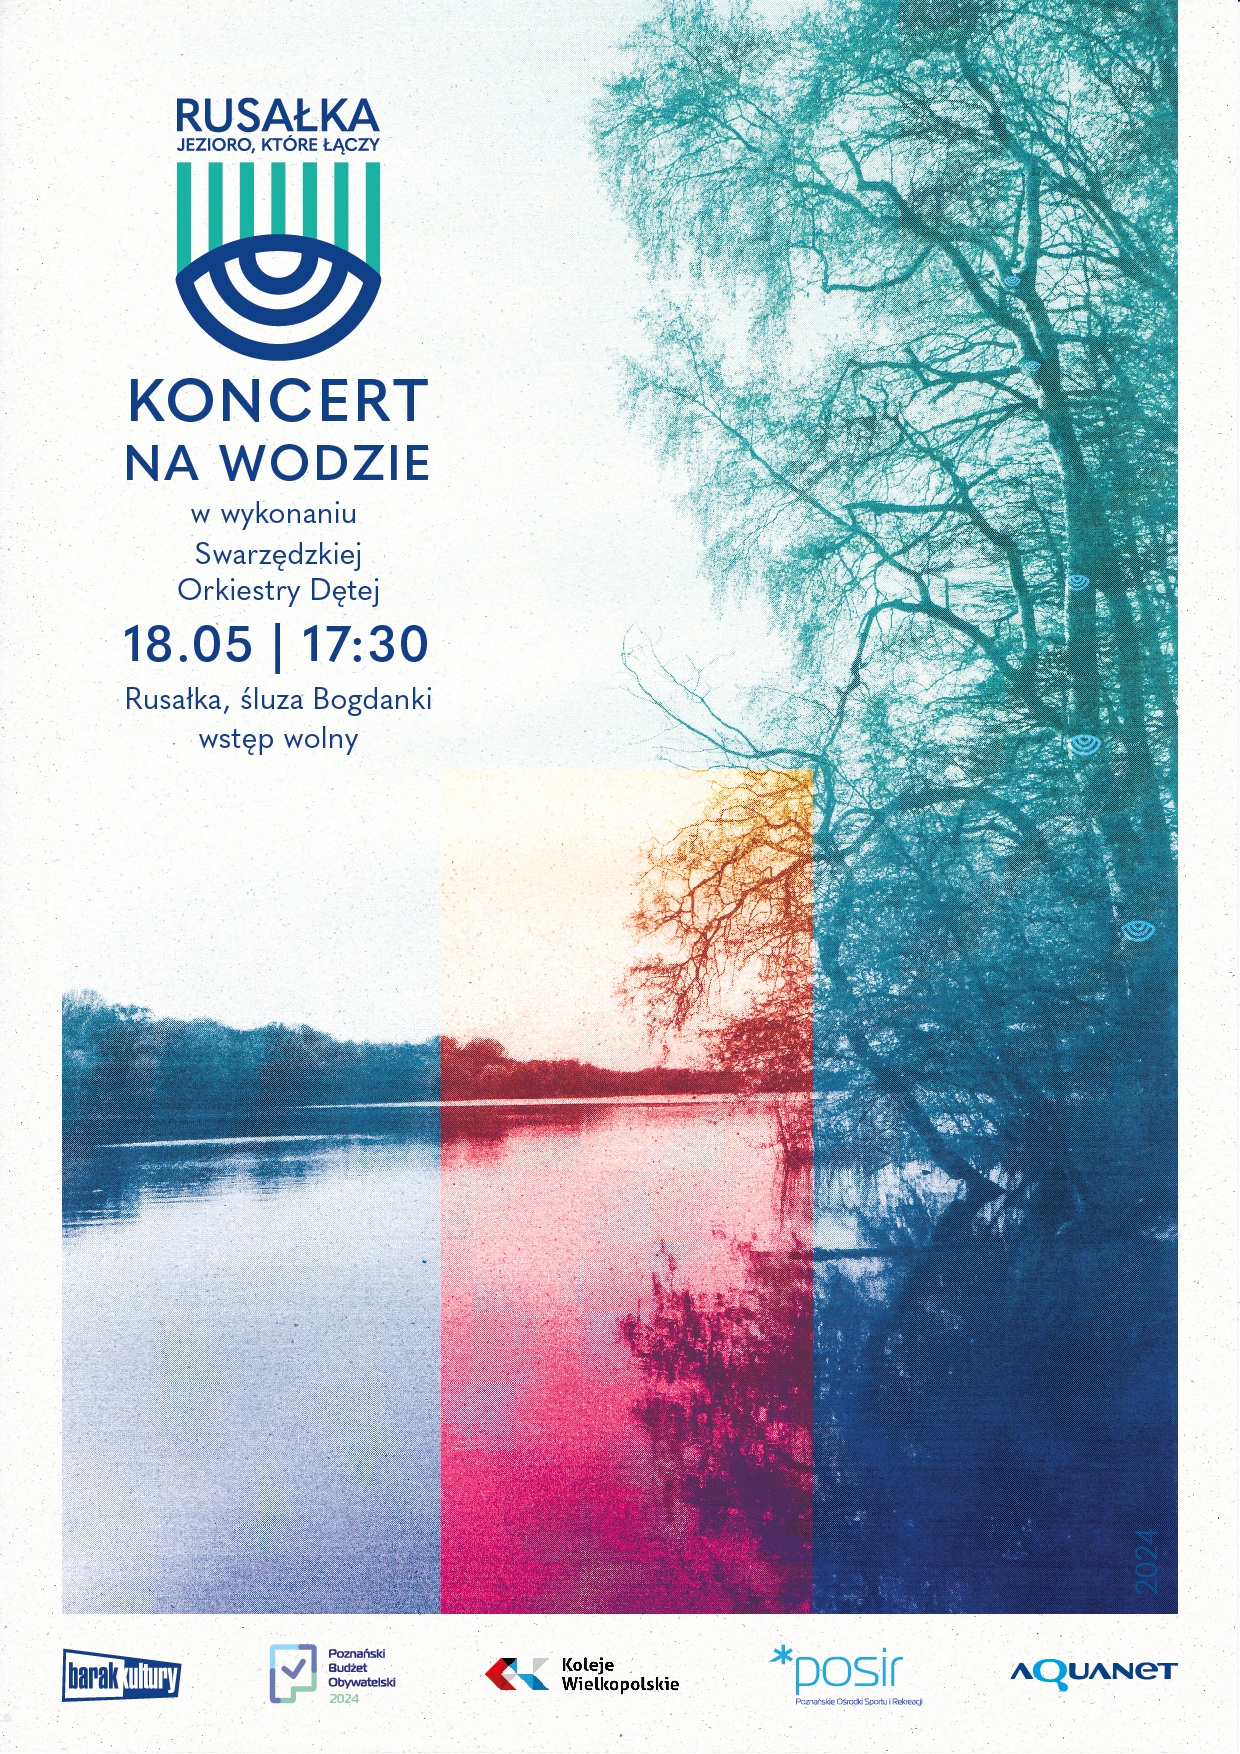 Plakat wydarzenia ze zdjęciem Jeziora Rusałka